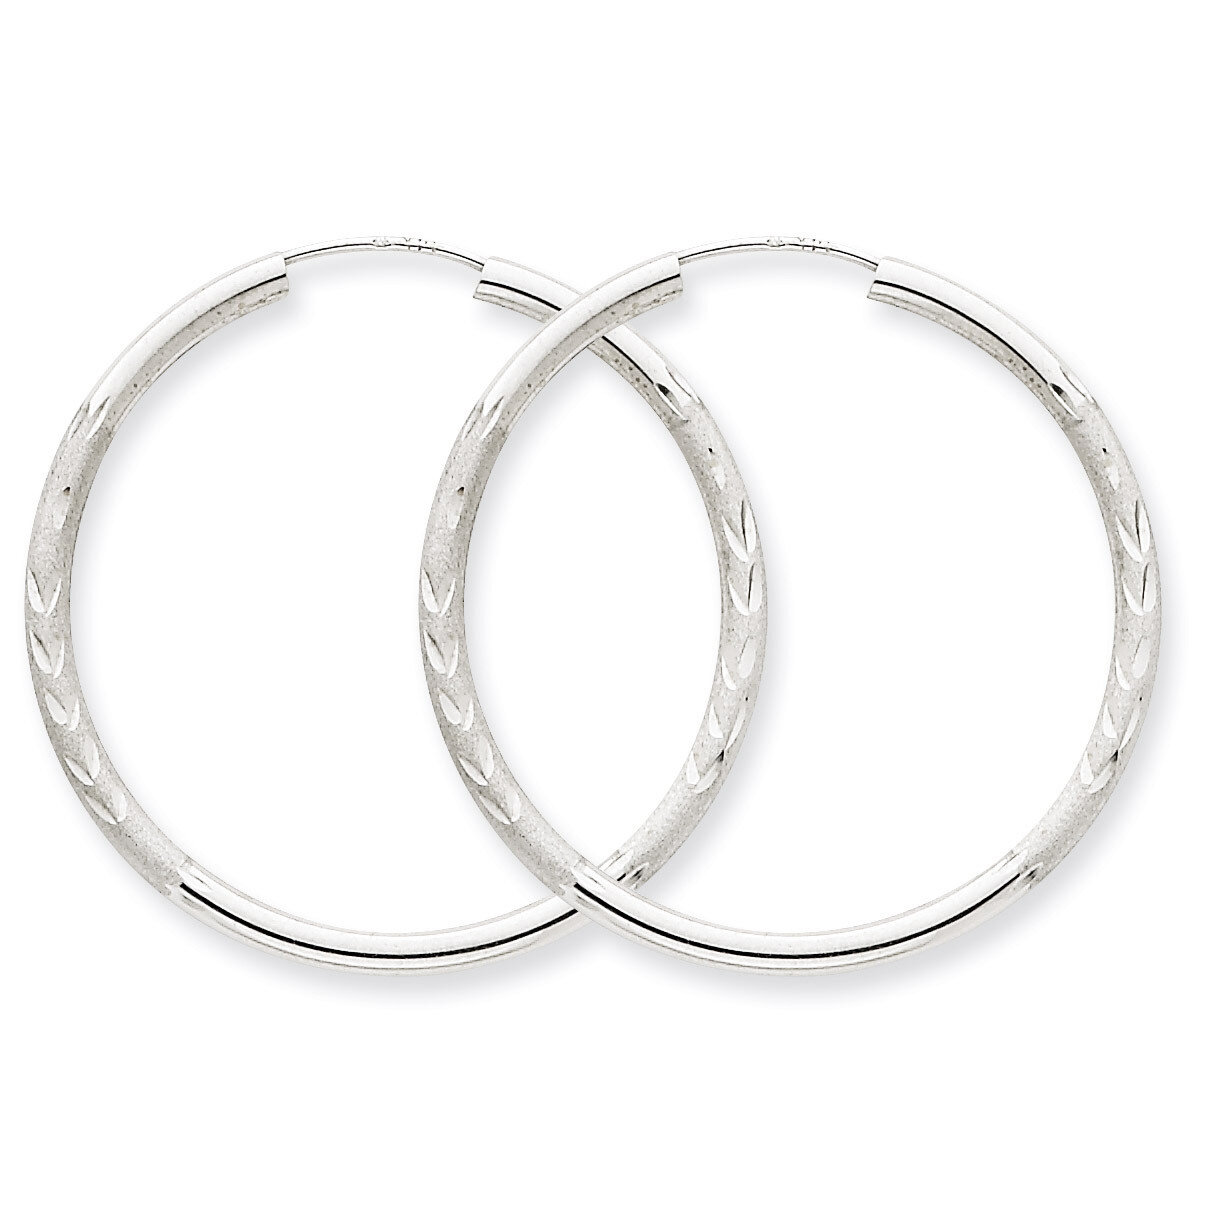 2mm Diamond-cut Endless Hoop Earrings 14k White Gold XY1203